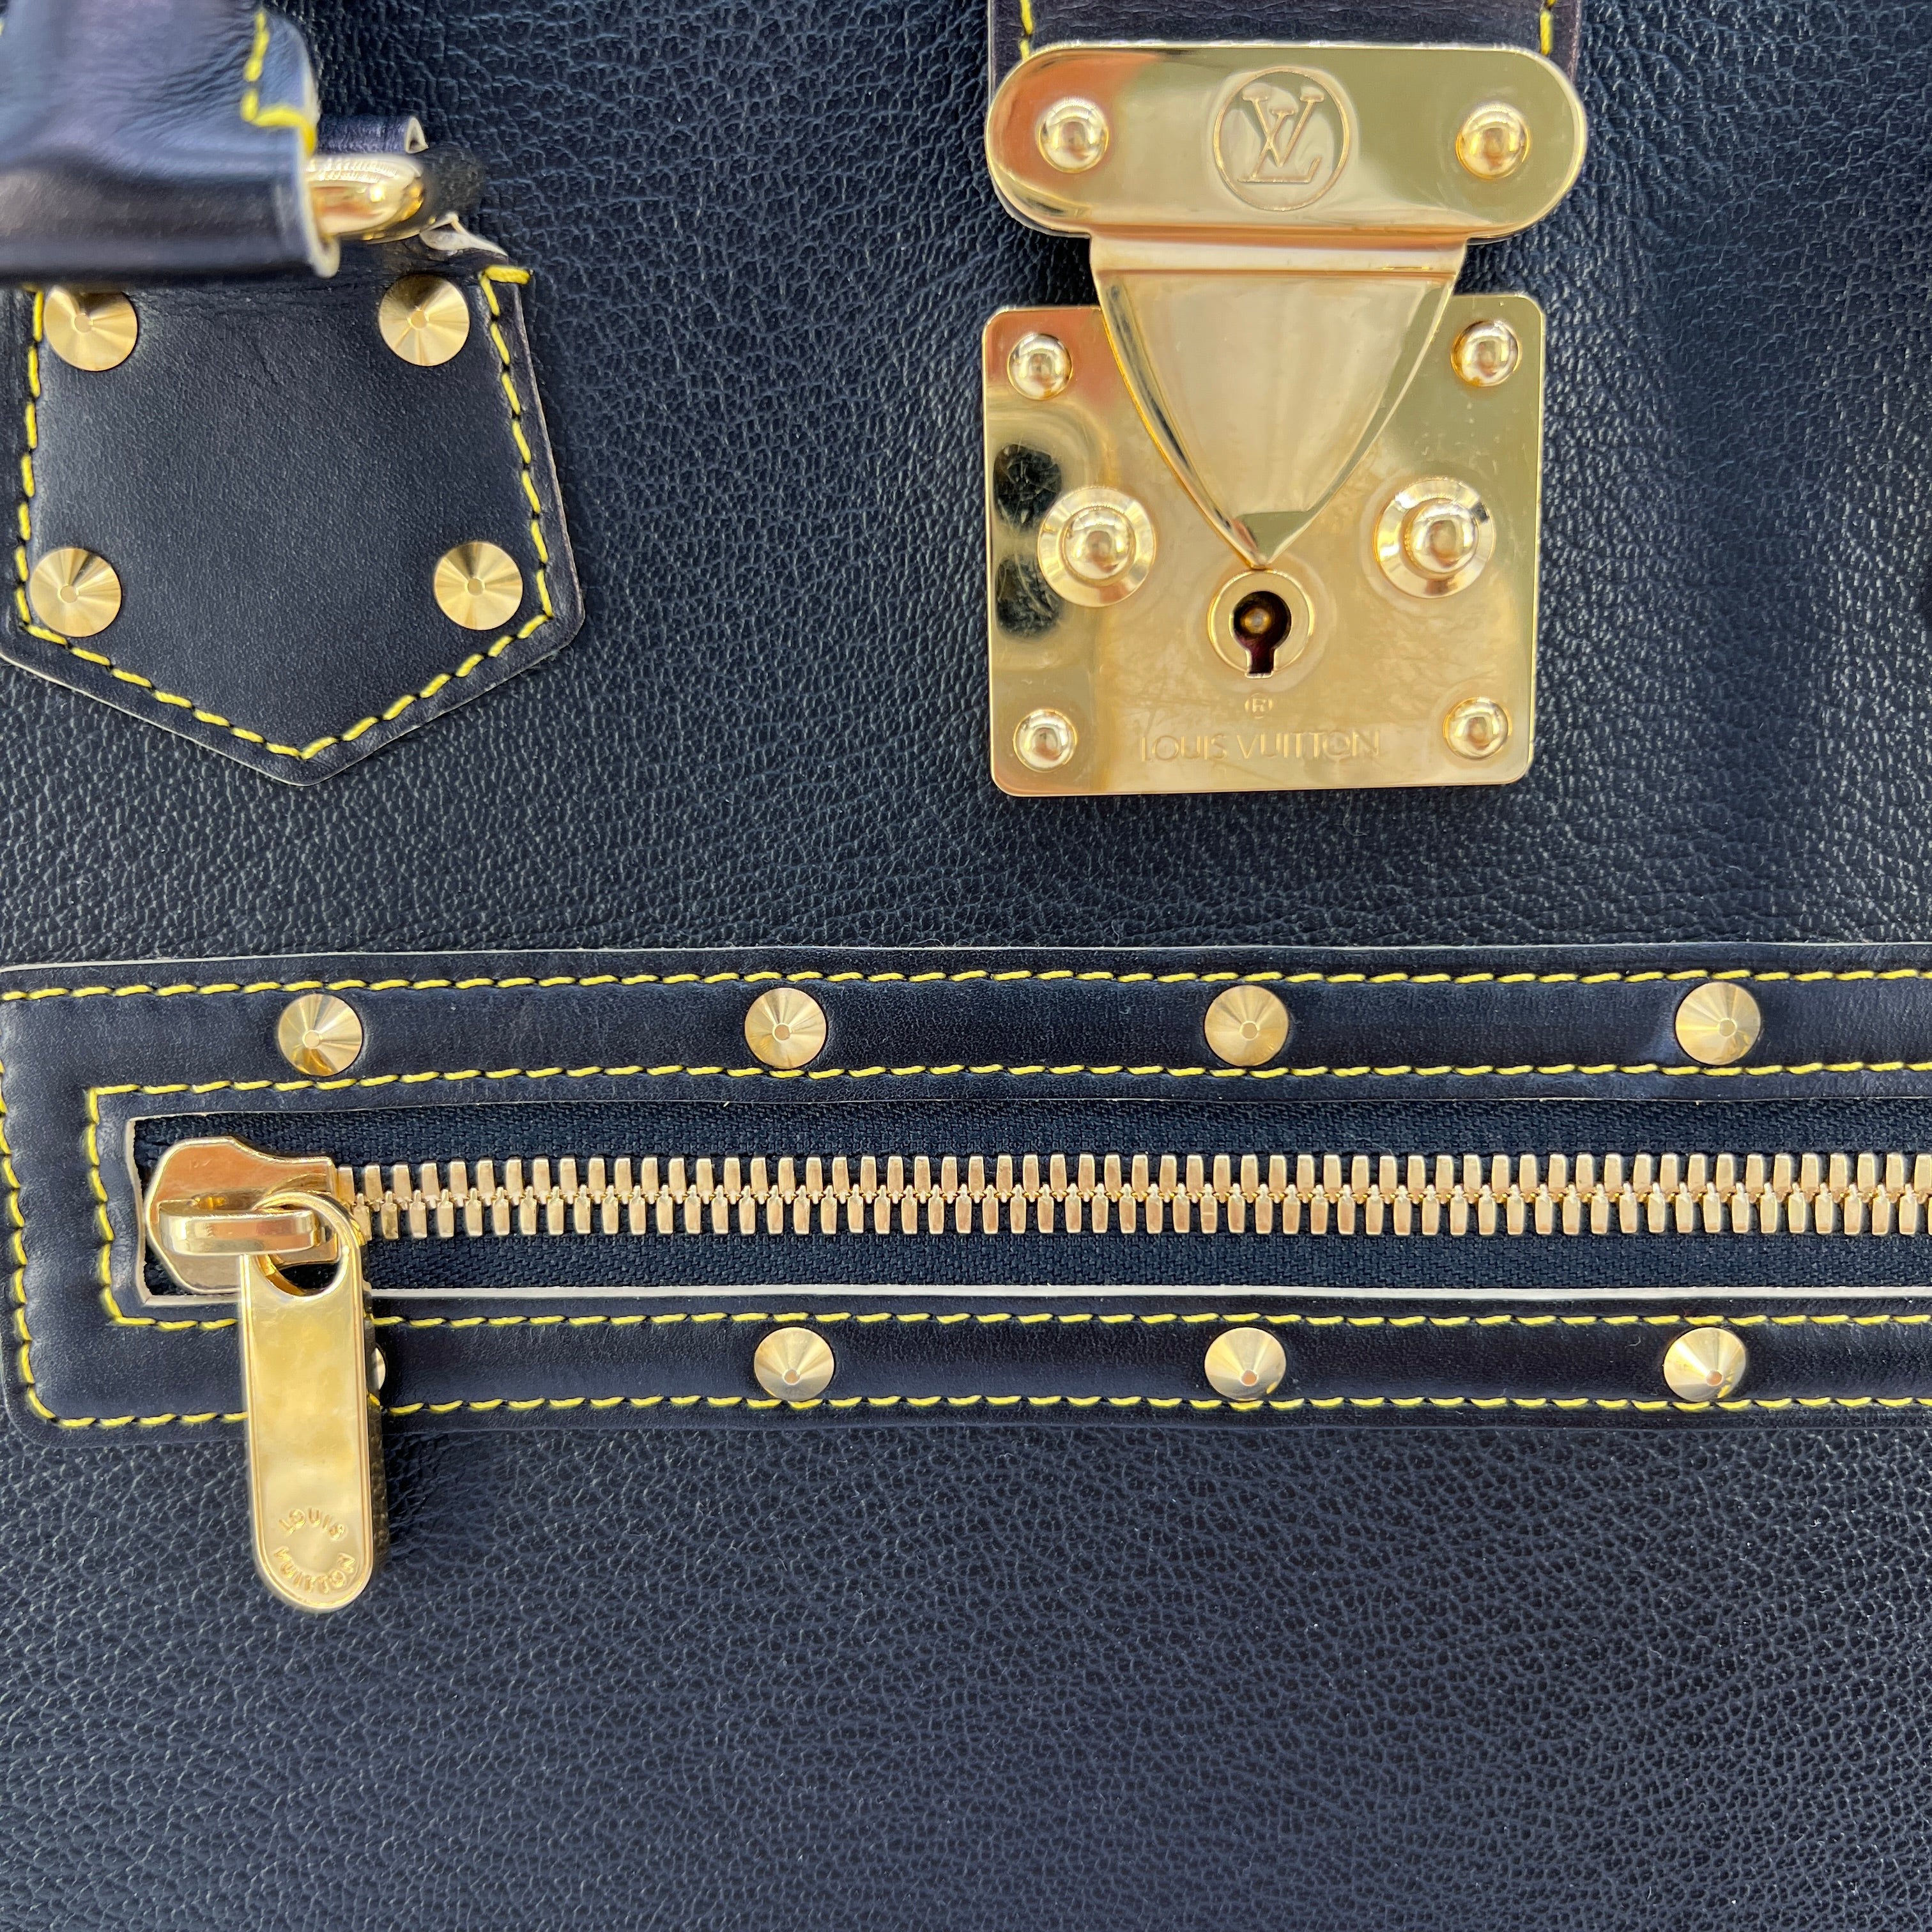 Louis Vuitton Suhali Le Fabuleux Leather Satchel Bag